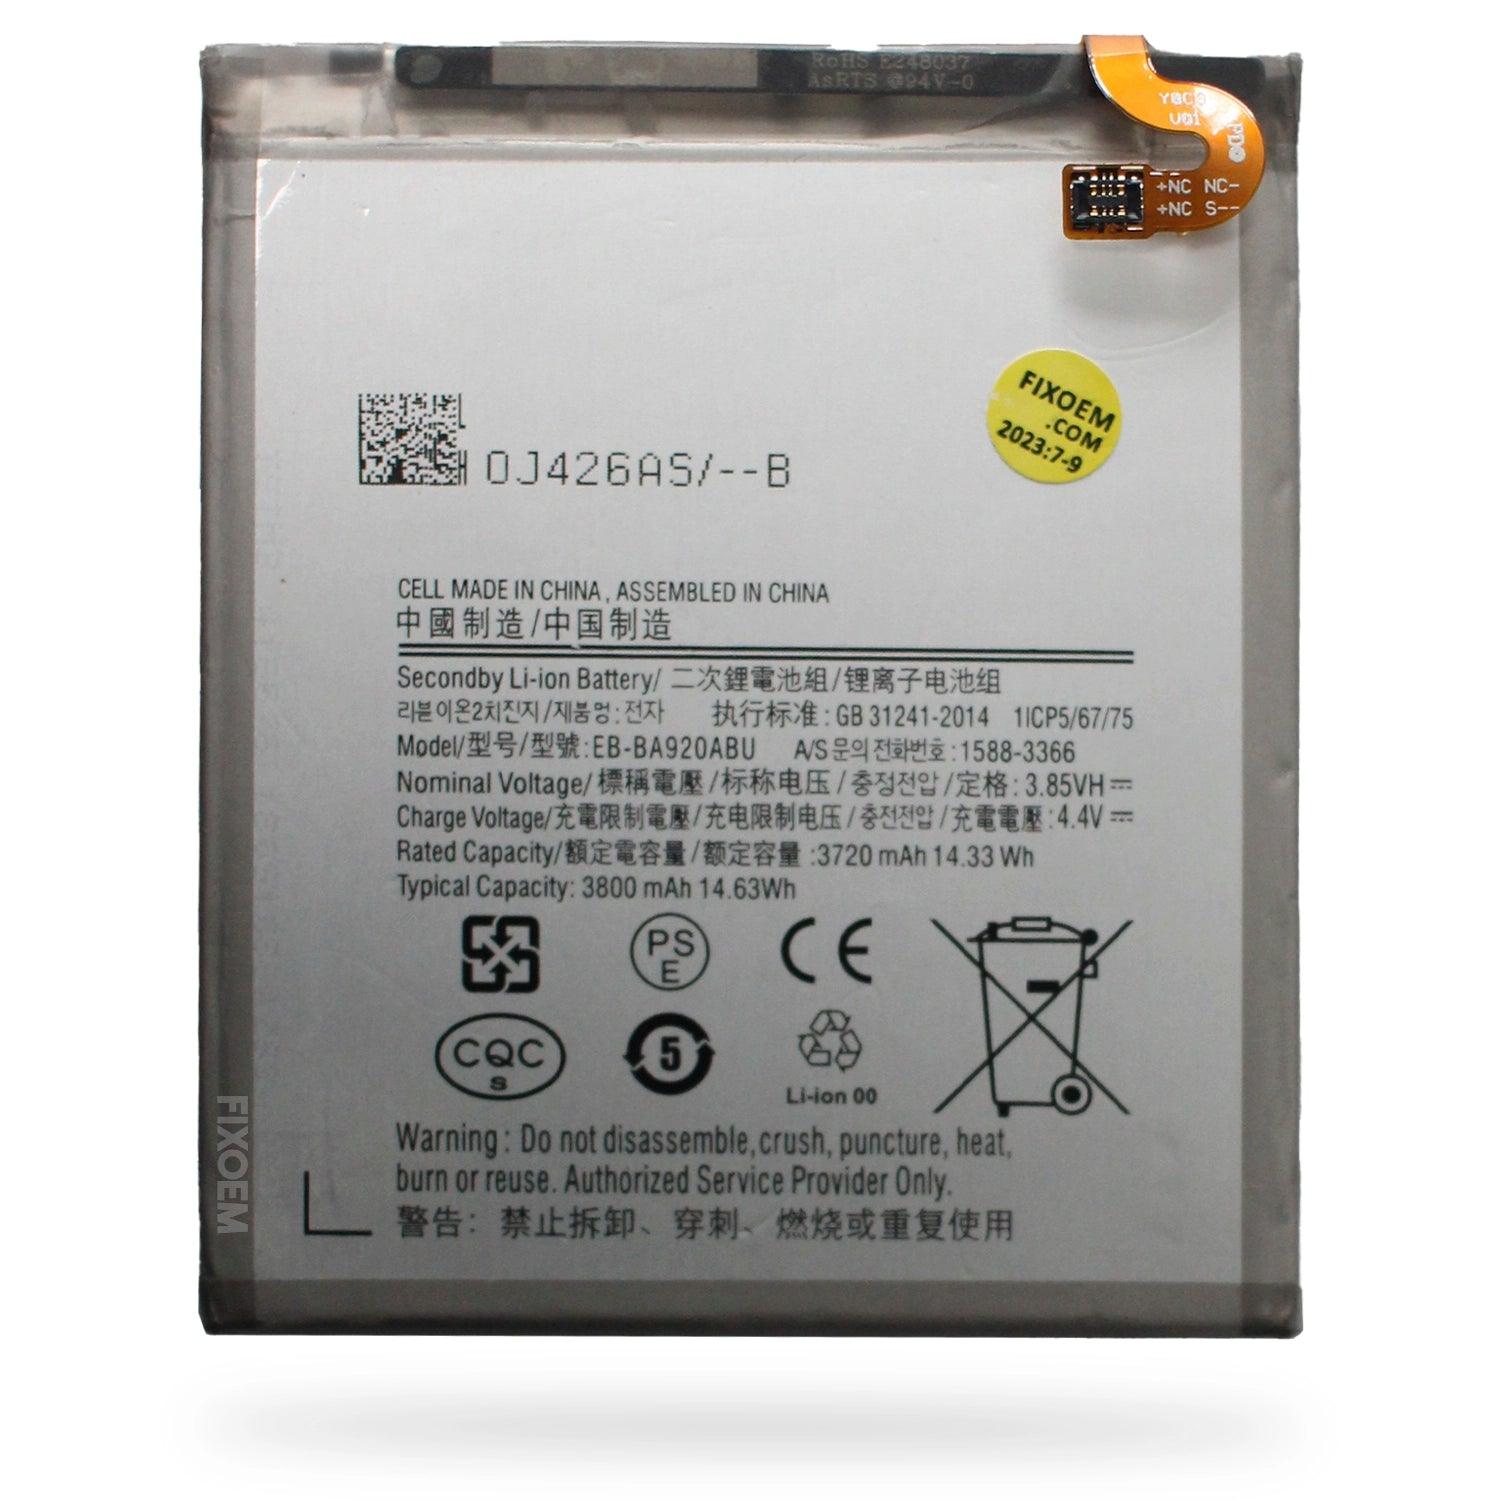 Bateria Samsung A9 2018 Sm-A920F Eb-Ba920Abu a solo $ 150.00 Refaccion y puestos celulares, refurbish y microelectronica.- FixOEM